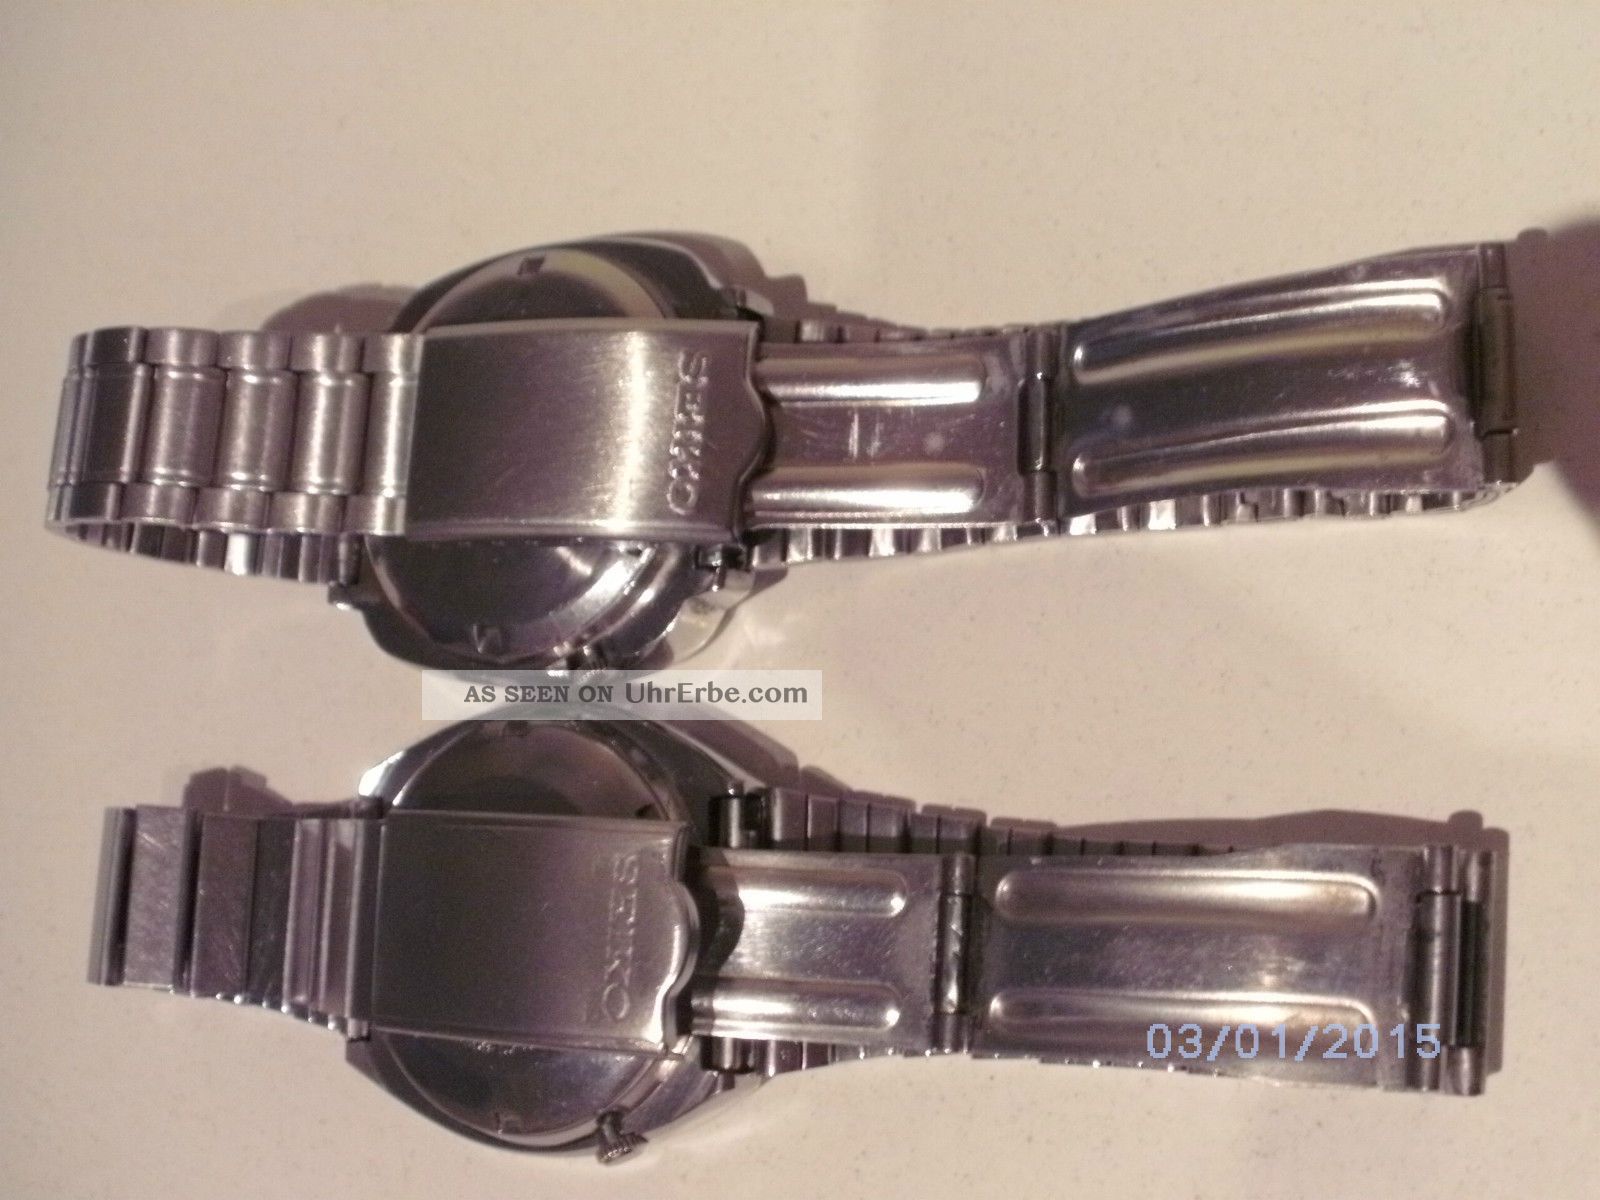 Zwei Seiko 5 Automatik Uhren Mit Metallarmband